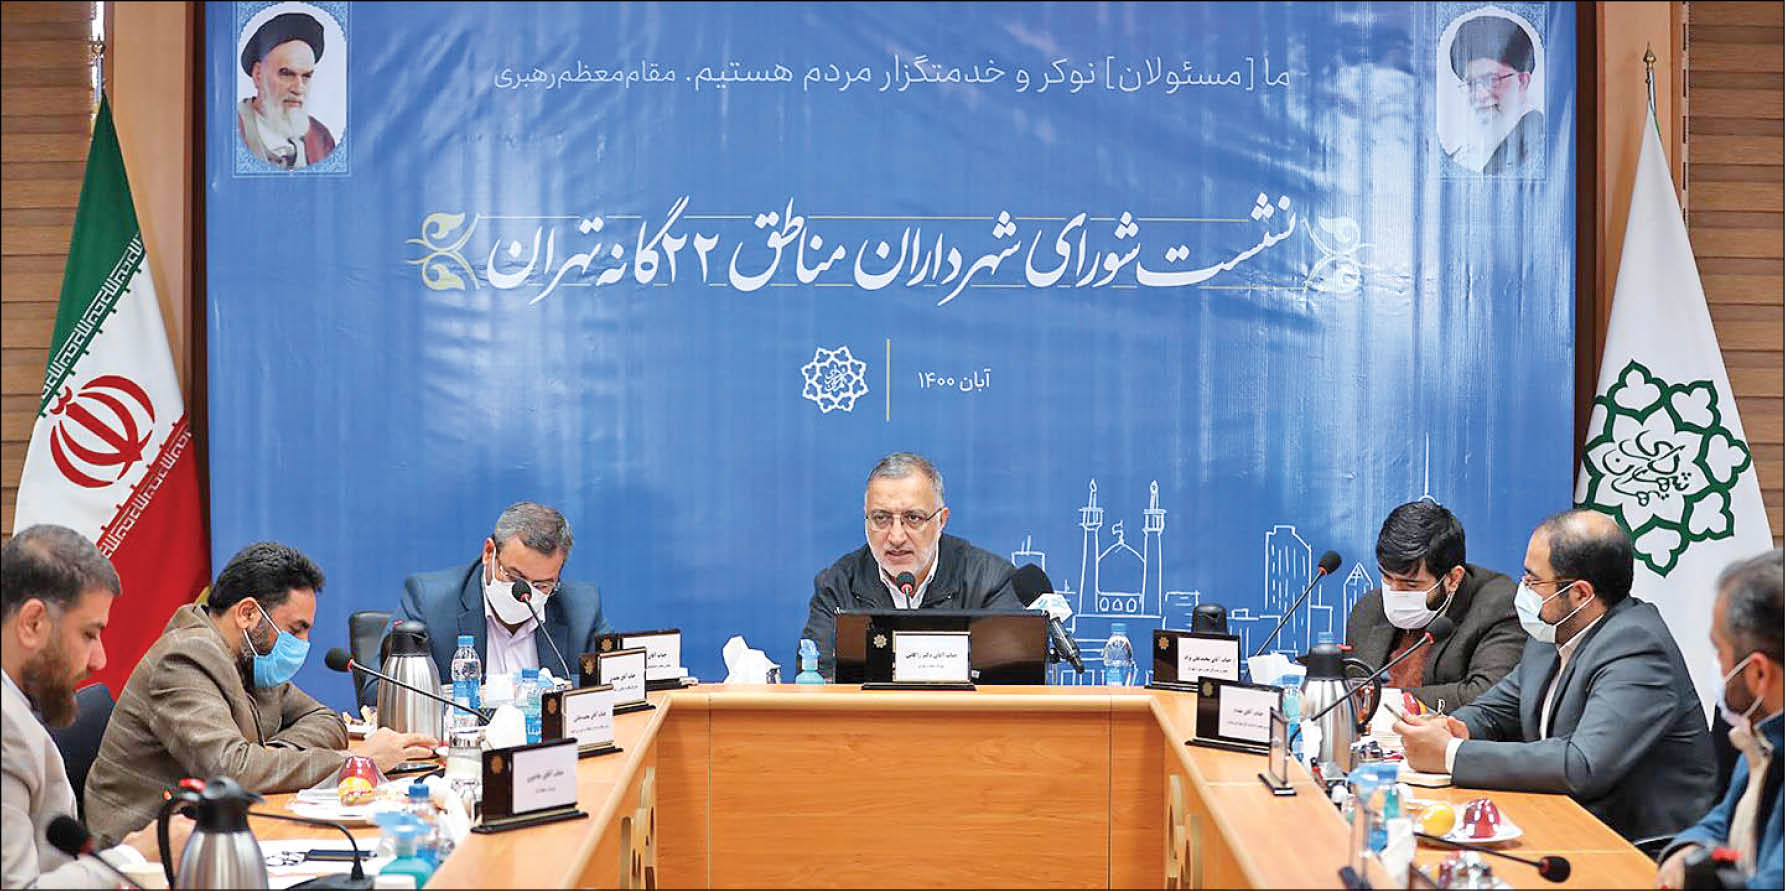 شهردار تهران در جلسه با شهرداران 22منطقه مطرح کرد